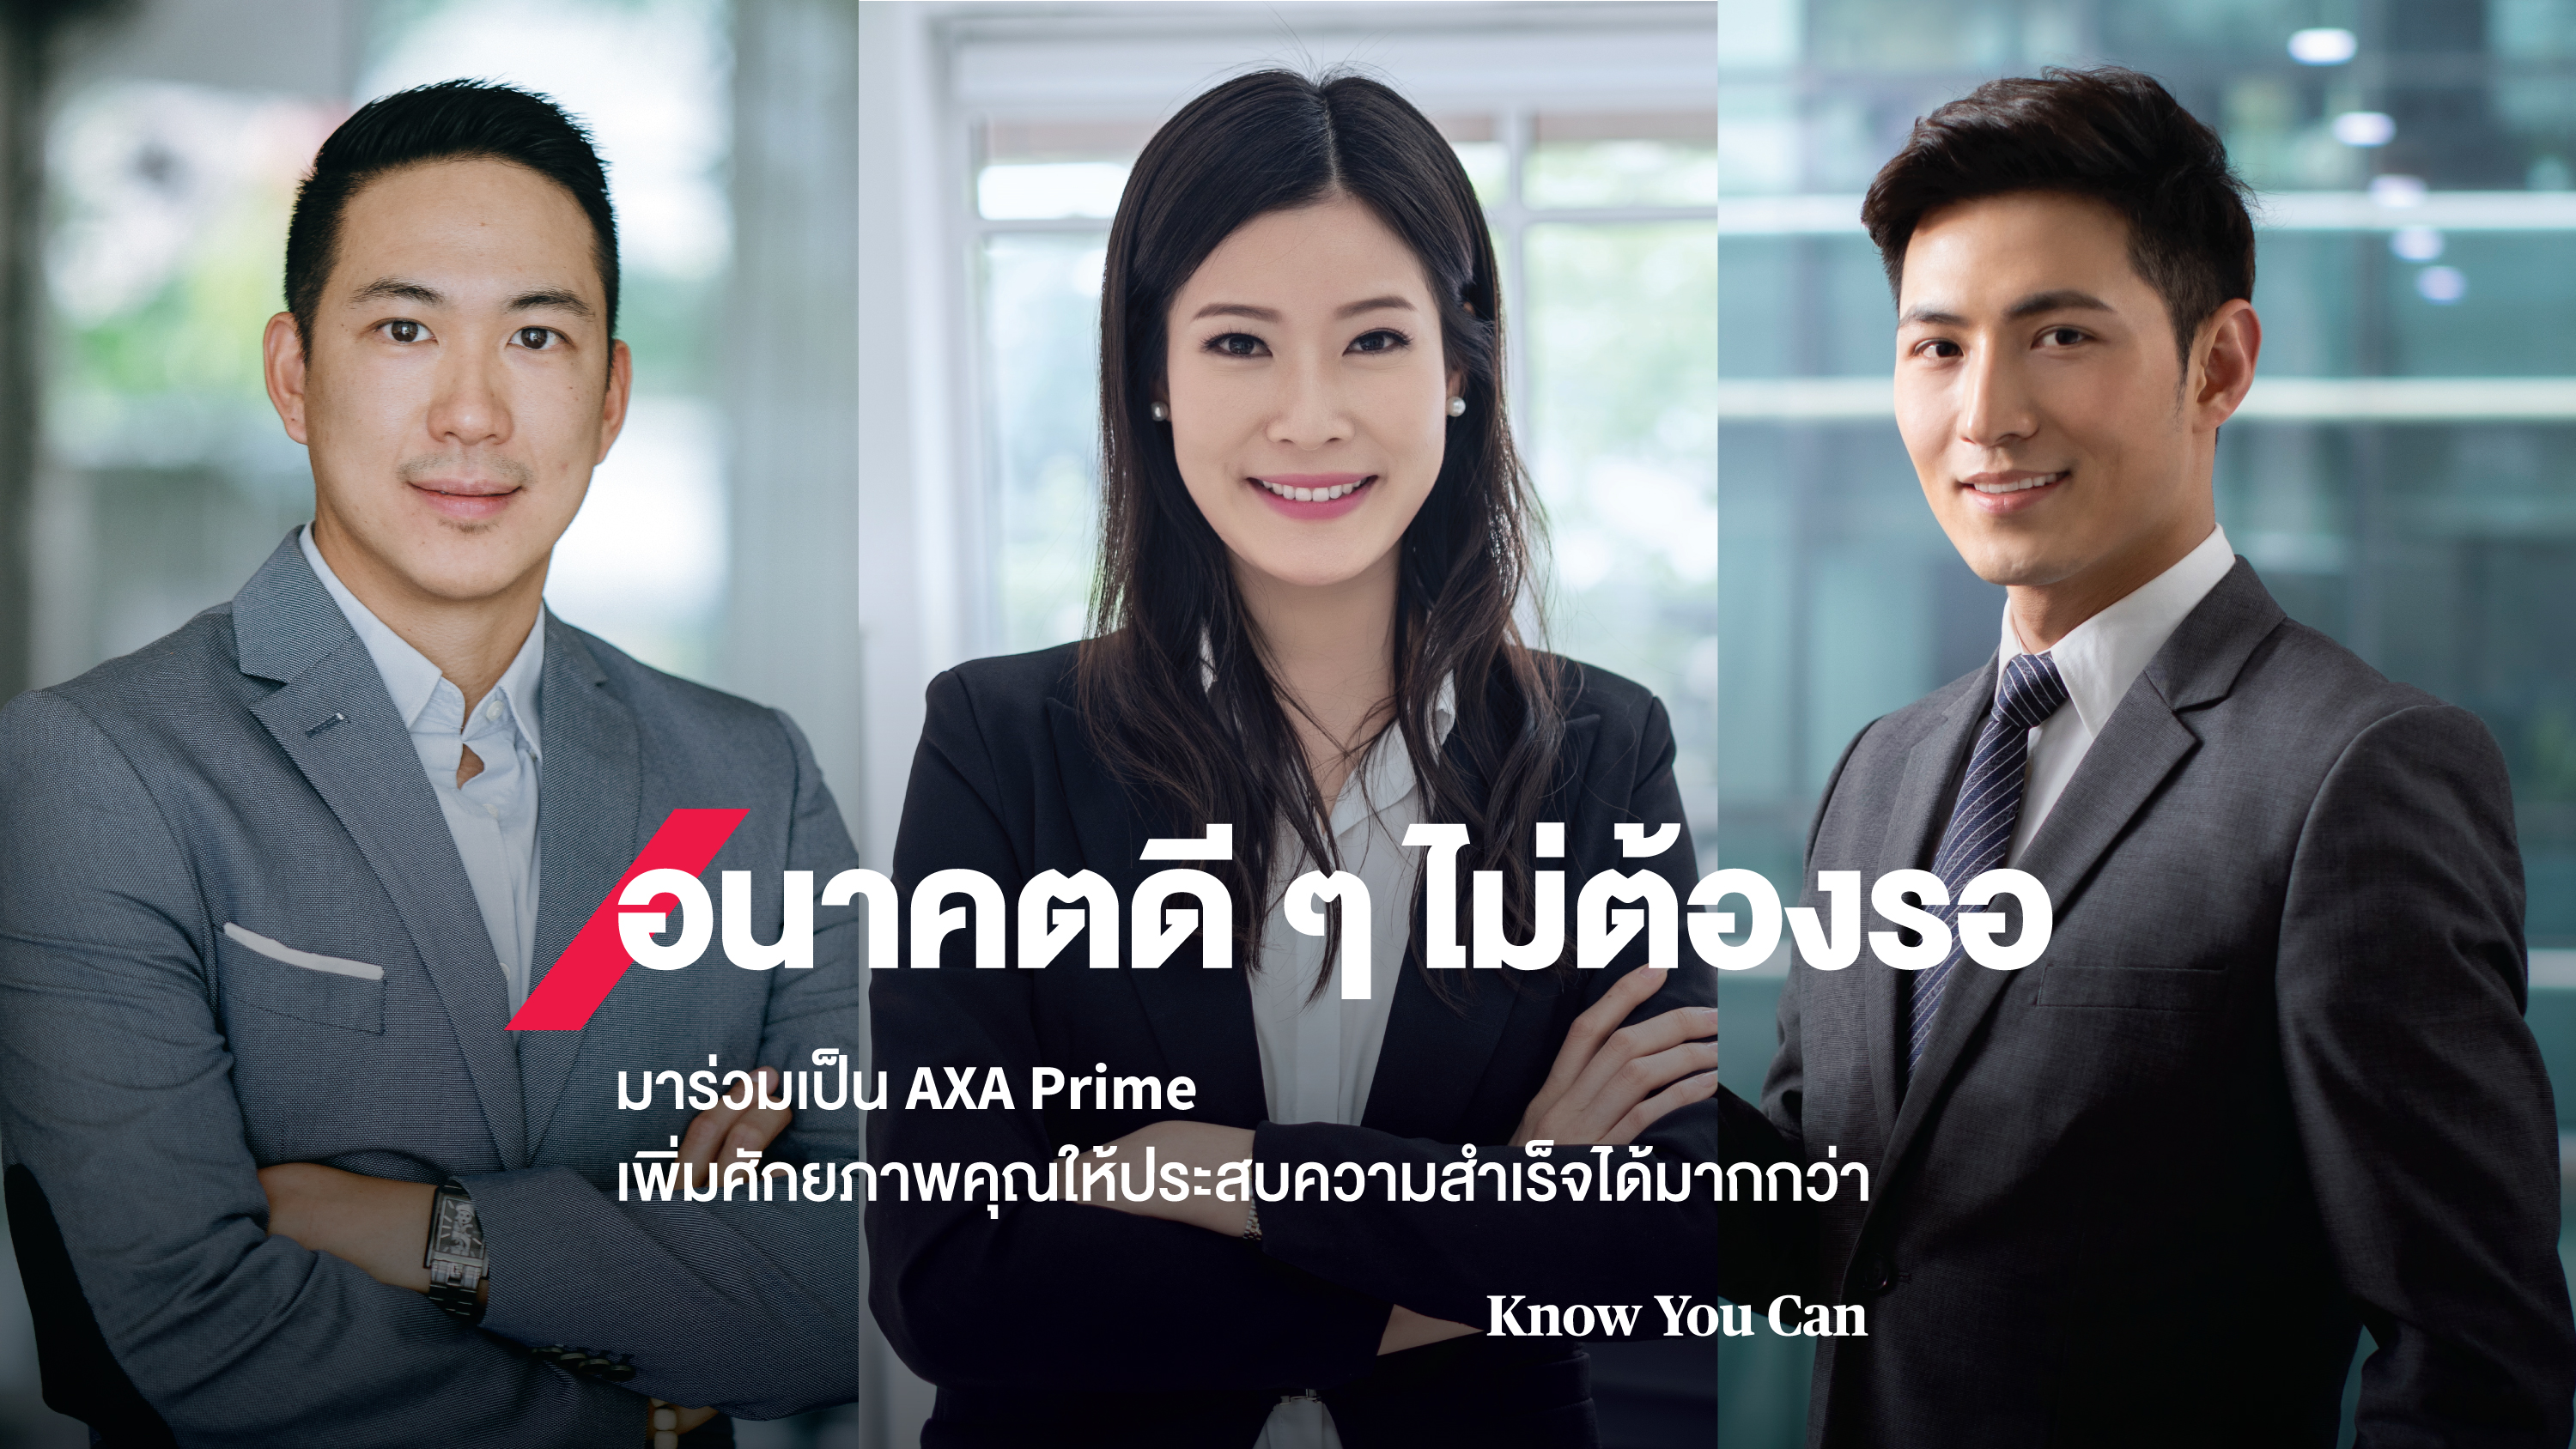 กรุงไทย–แอกซ่า ประกันชีวิต เปิดตัวภาพยนตร์โฆษณาออนไลน์ AXA Prime ชุดใหม่ “AXA Prime อนาคตดี ๆ ไม่ต้องรอ”